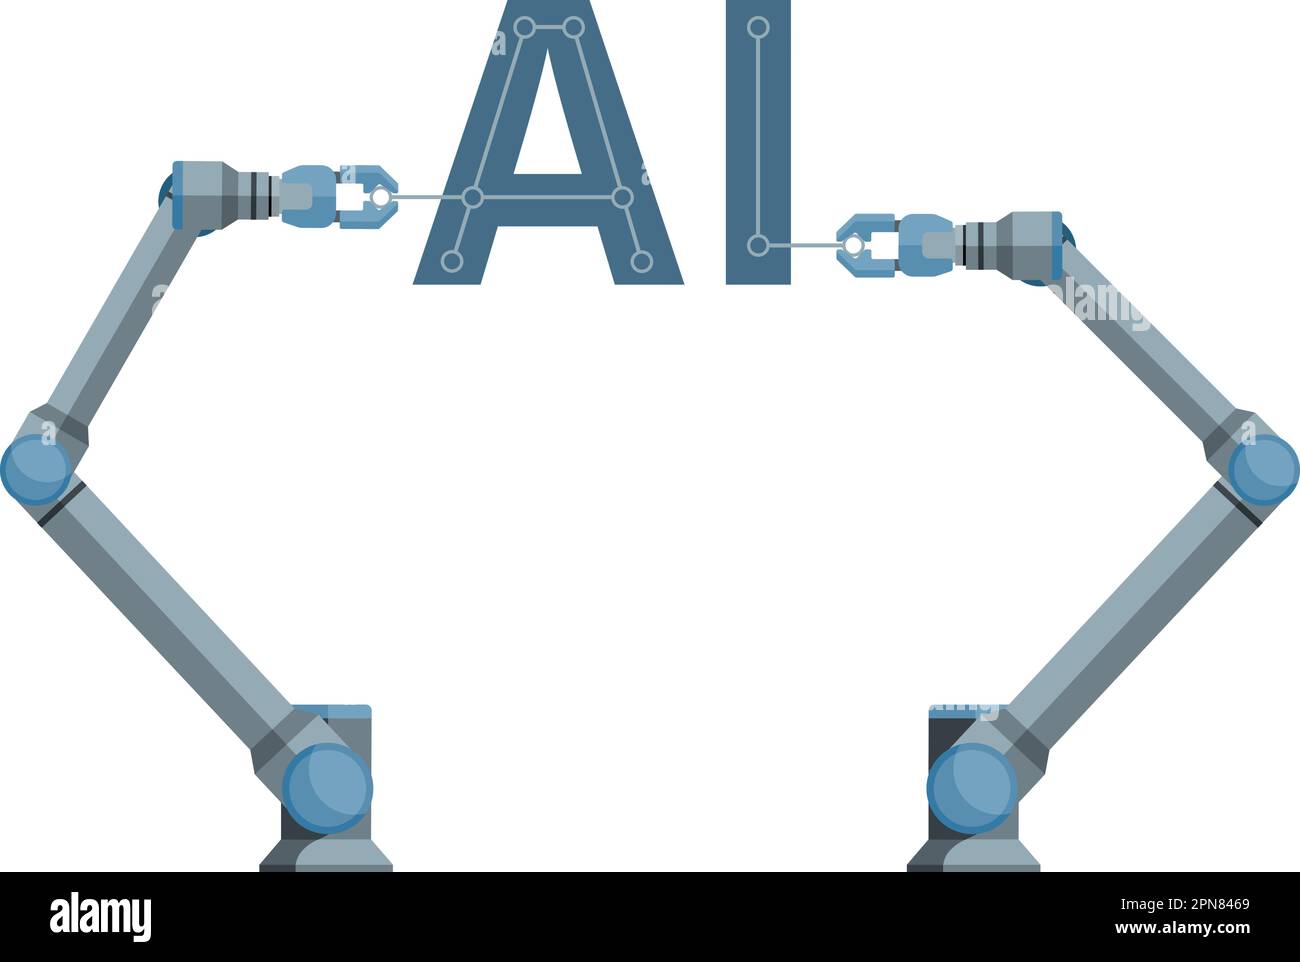 Roboter bauen das KI-Symbol für künstliche Intelligenz zusammen. Vektordarstellung Stock Vektor